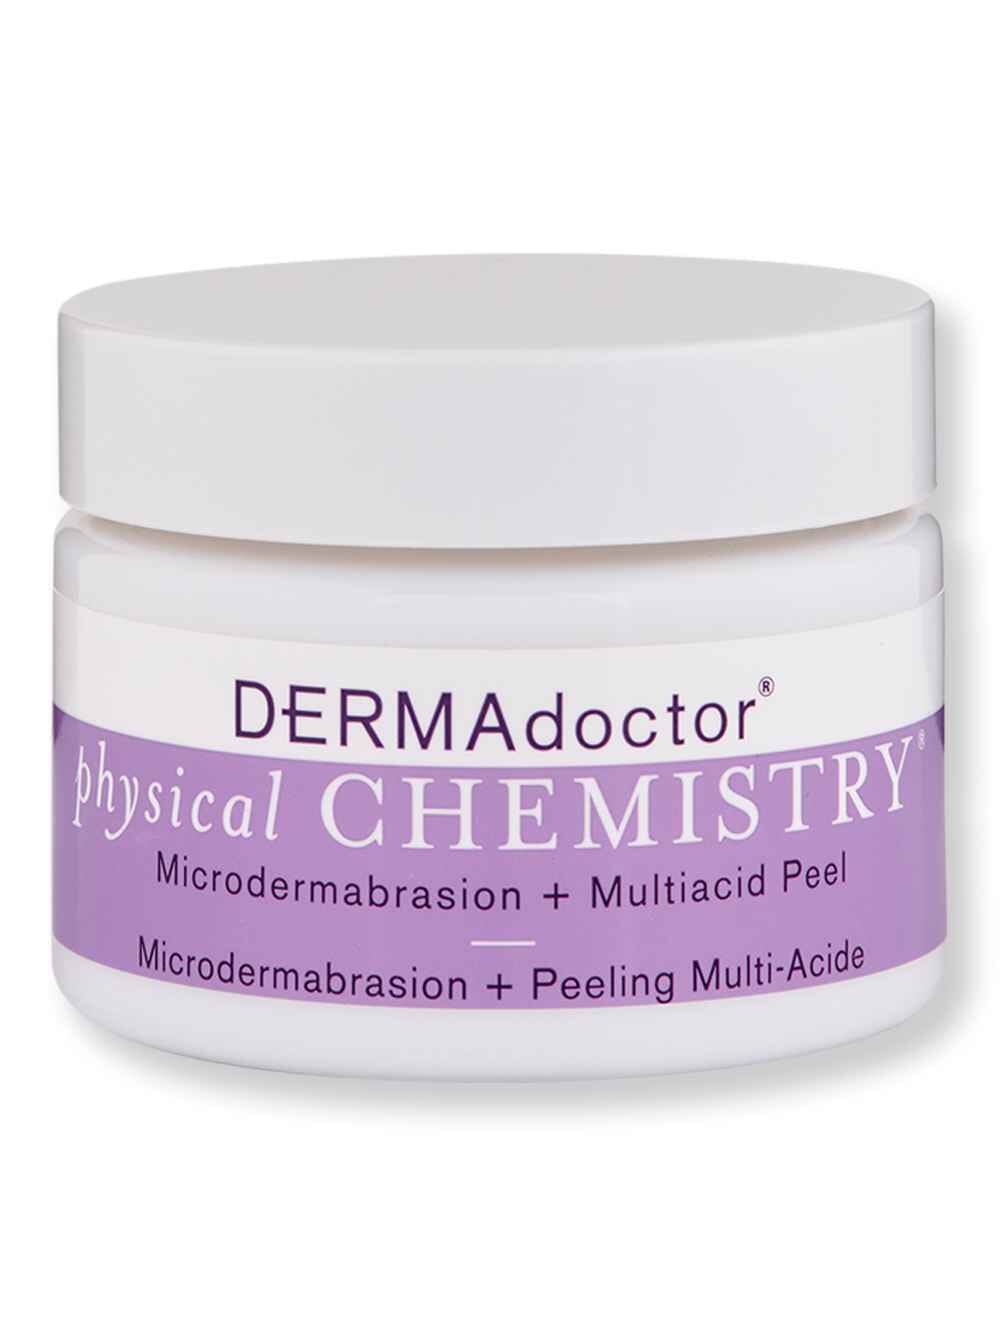 DermaDoctor DermaDoctor Physical Chemistry Microdermabrasion + Multiacid Chemical Peel 1.7 oz50 ml Exfoliators & Peels 